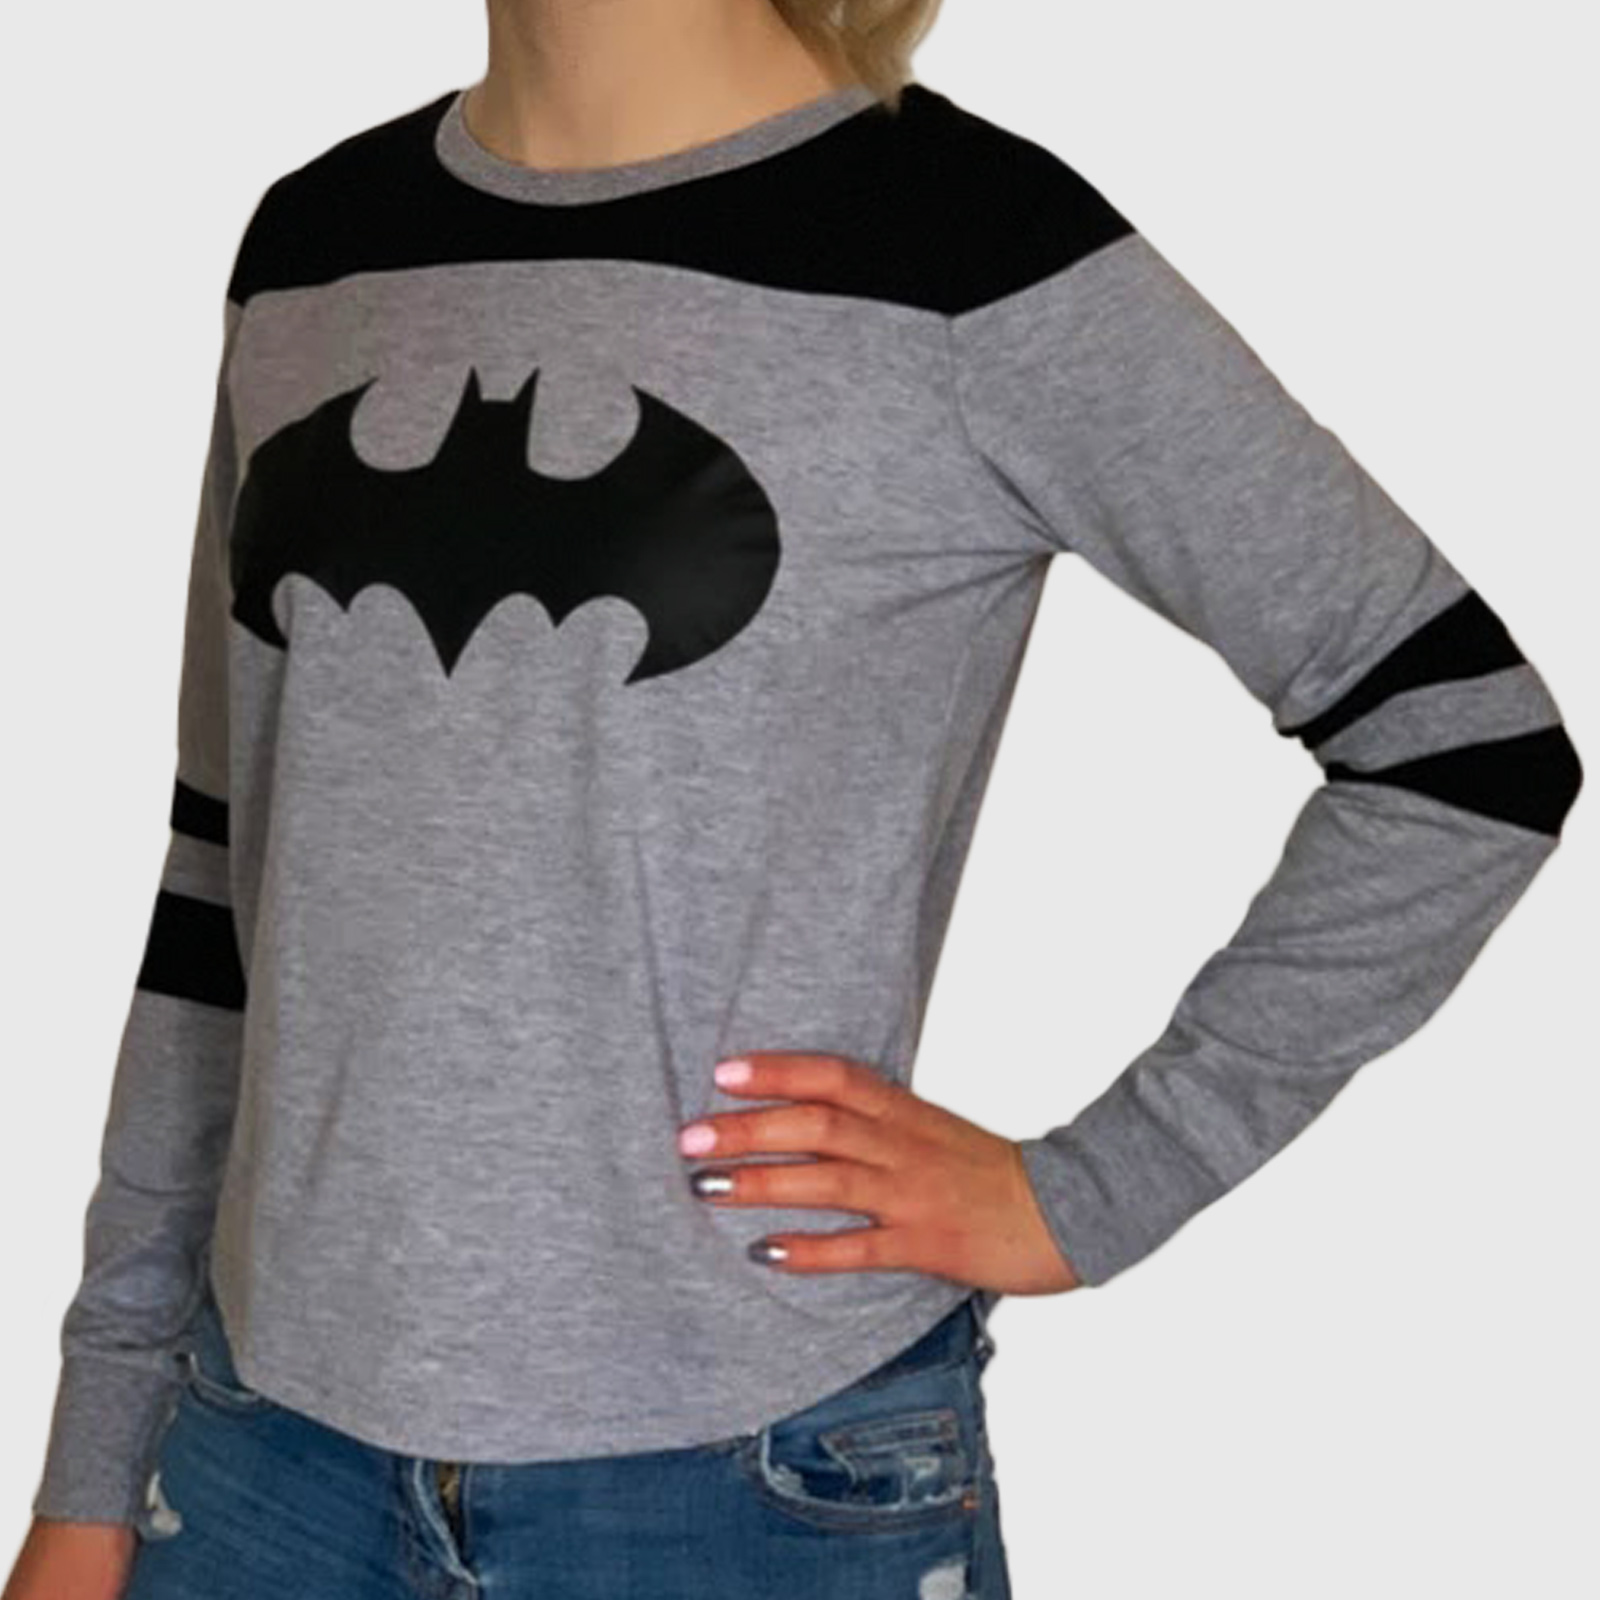 Женский молодежный свитшот с принтом Batman – для модных фанаток Темного Рыцаря №67